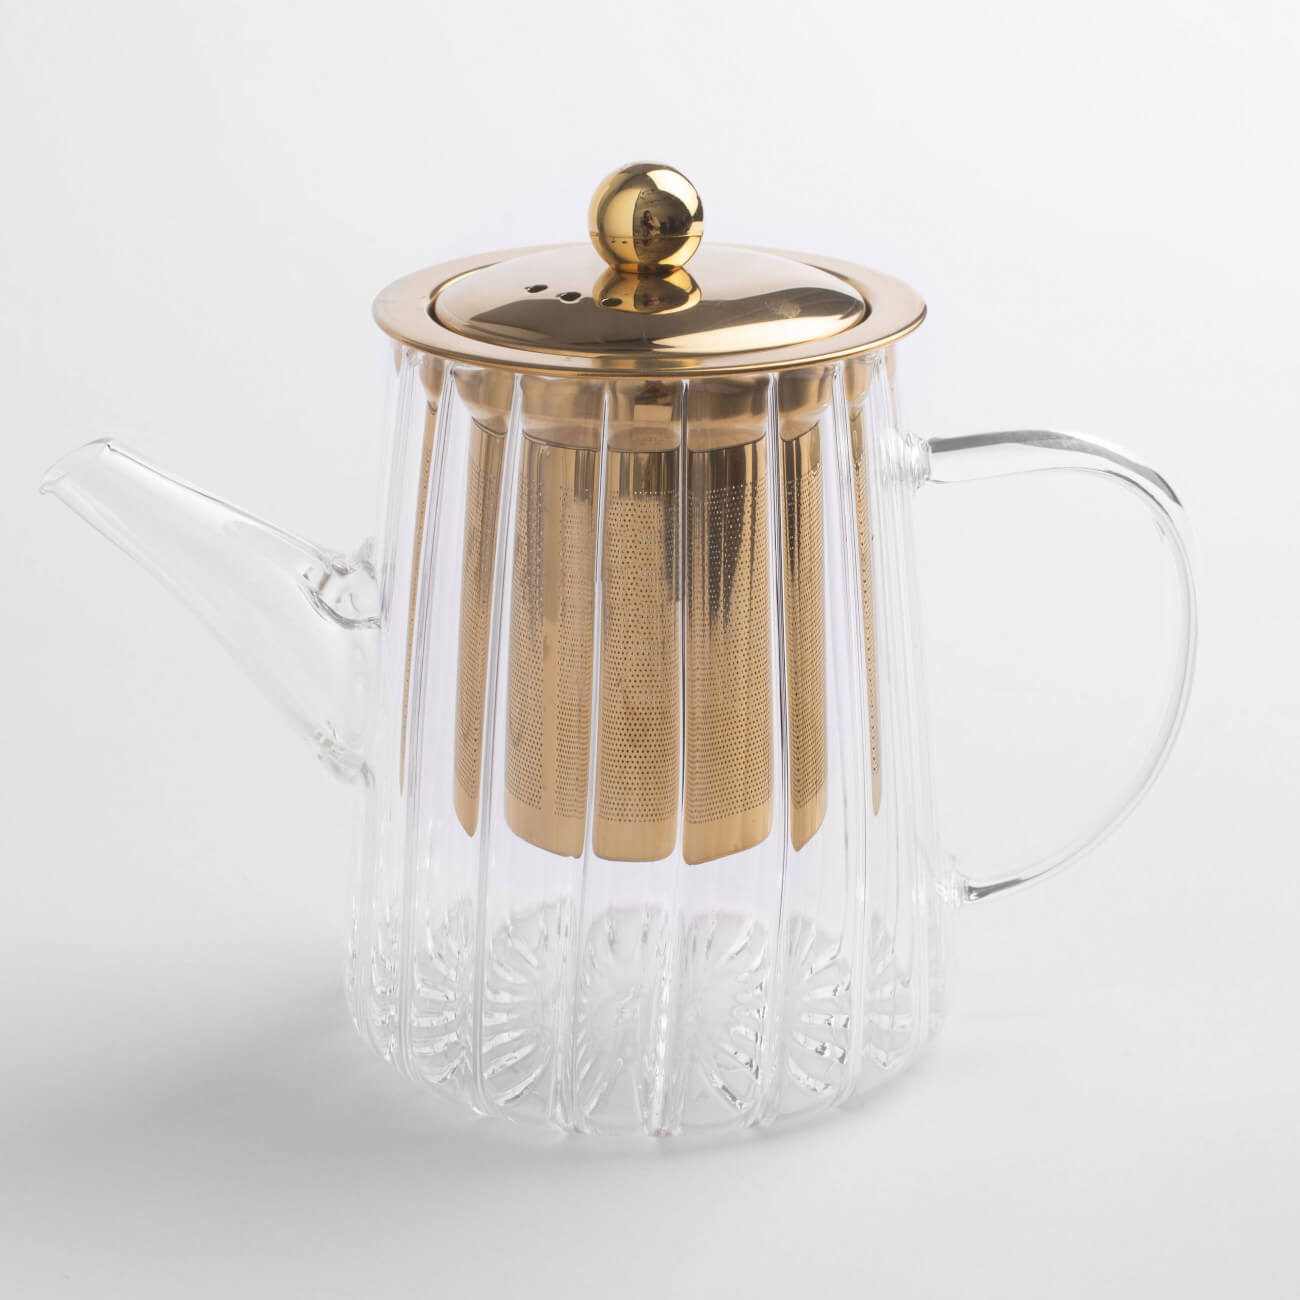 Чайник заварочный, 600 мл, стекло Б/сталь, золотистый, Camellia gold чайник заварочный pozzi milano 1876 deco